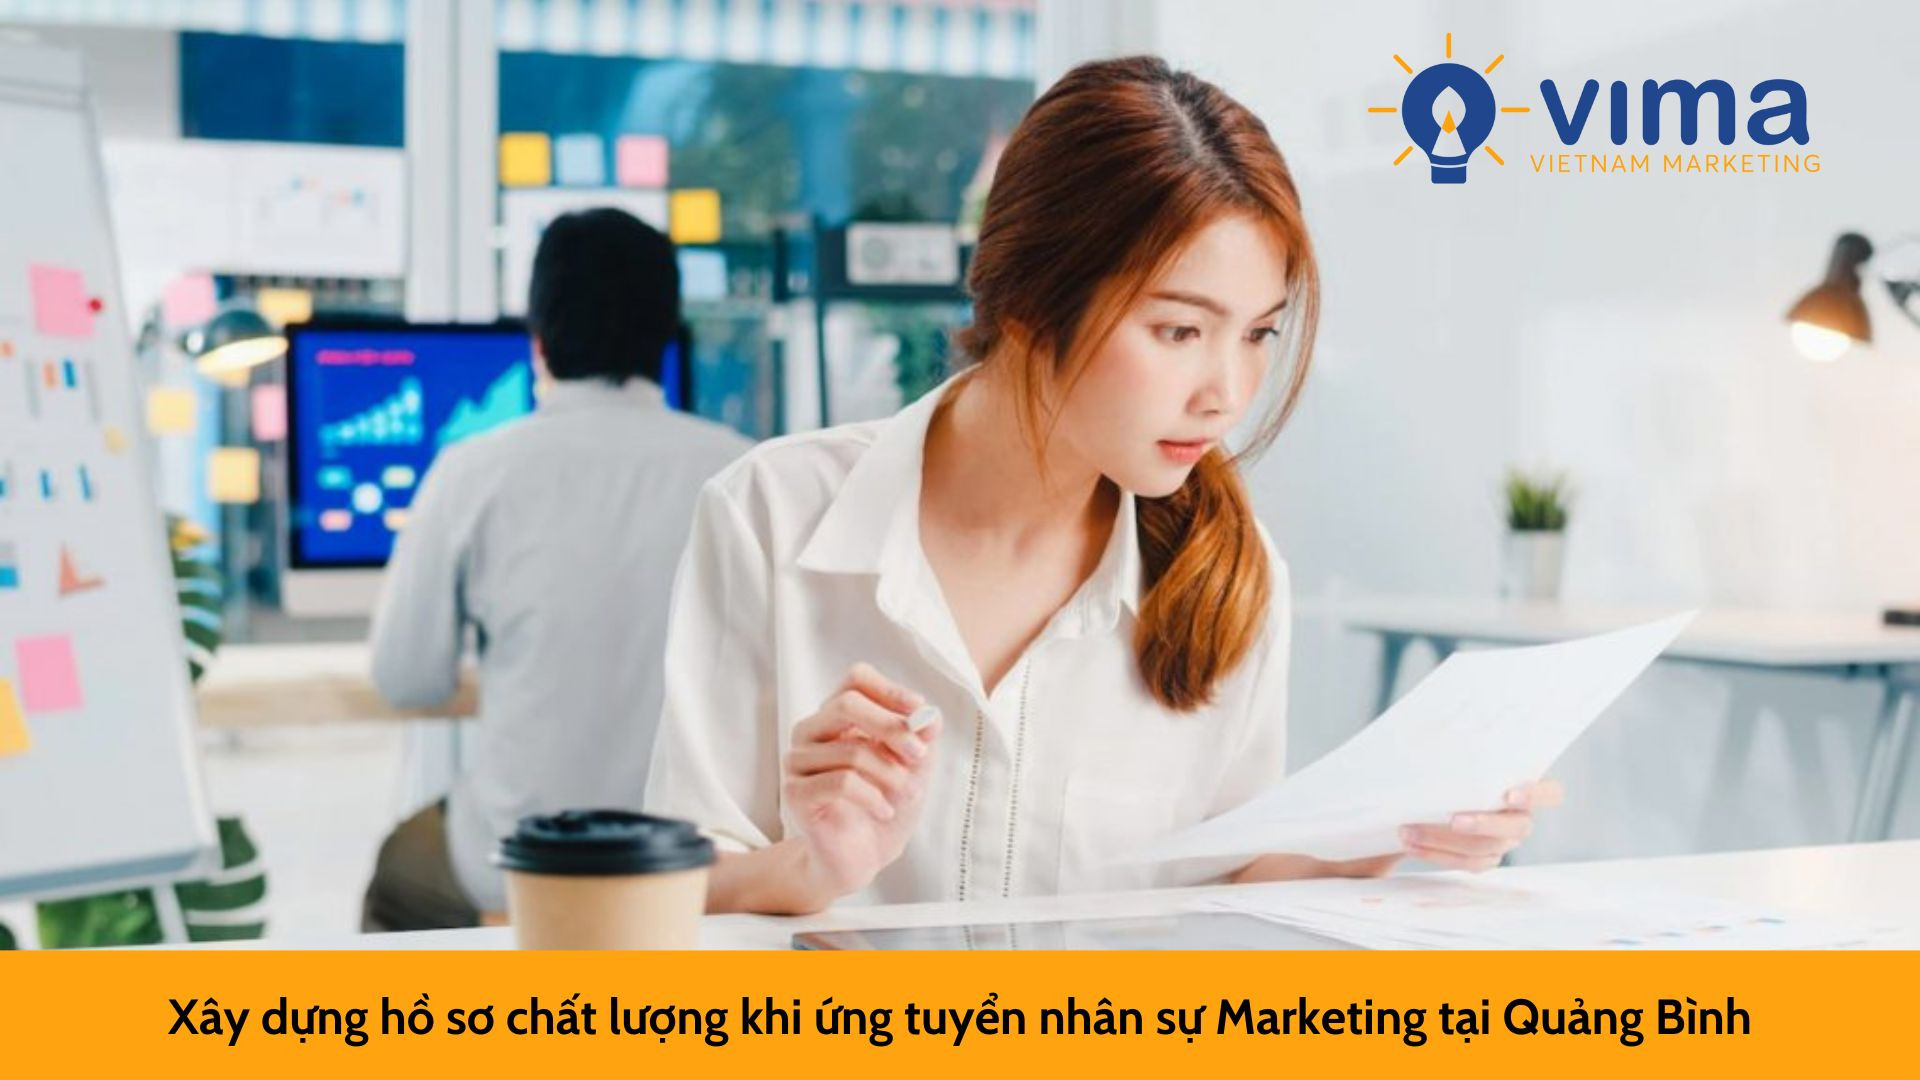 Xây dựng hồ sơ chất lượng khi ứng tuyển nhân sự Marketing tại Quảng Bình